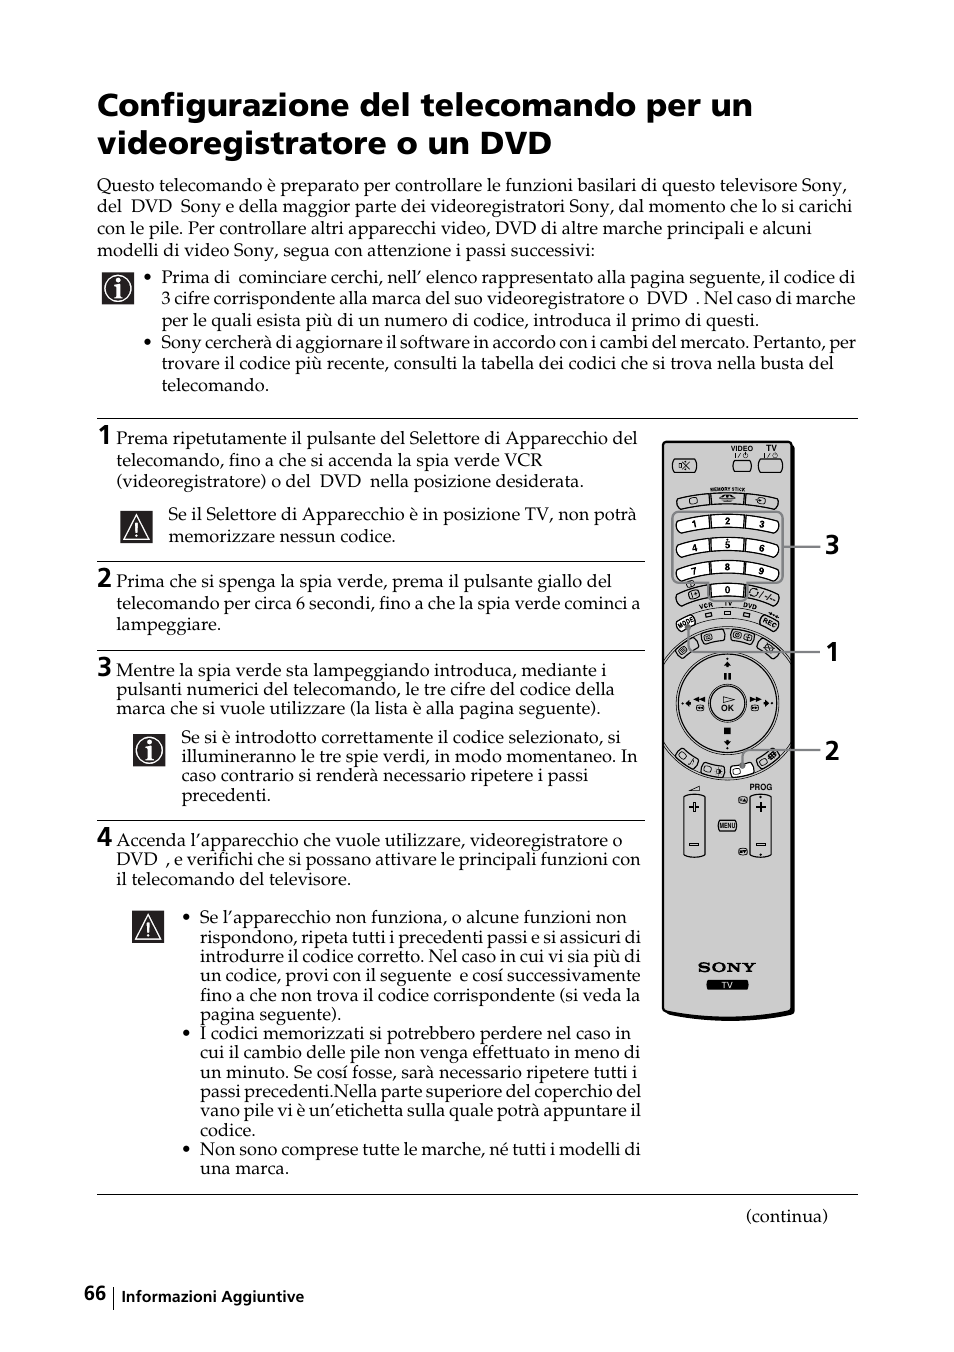 Sony KE-42MR1 Manuale d'uso | Pagina 67 / 302